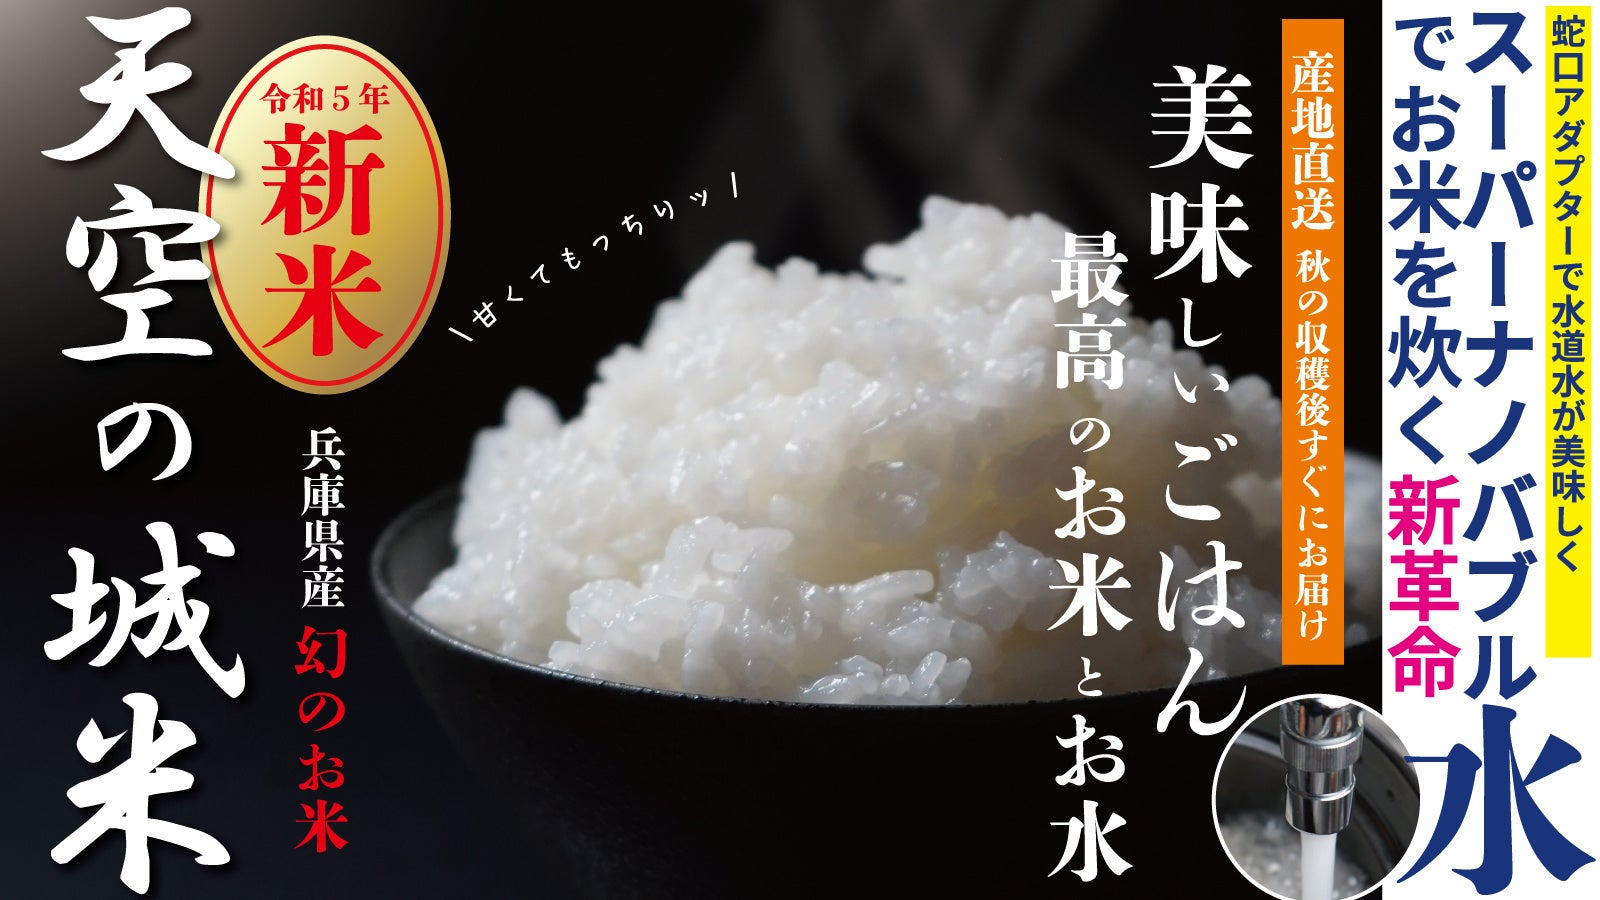 Makuake先行発売！農家を救う！幻のお米「天空の城米」× 炊飯革命「スーパーナノバブル水」美味しさUP！食欲の秋に最高のおいしいごはんを食卓へ。